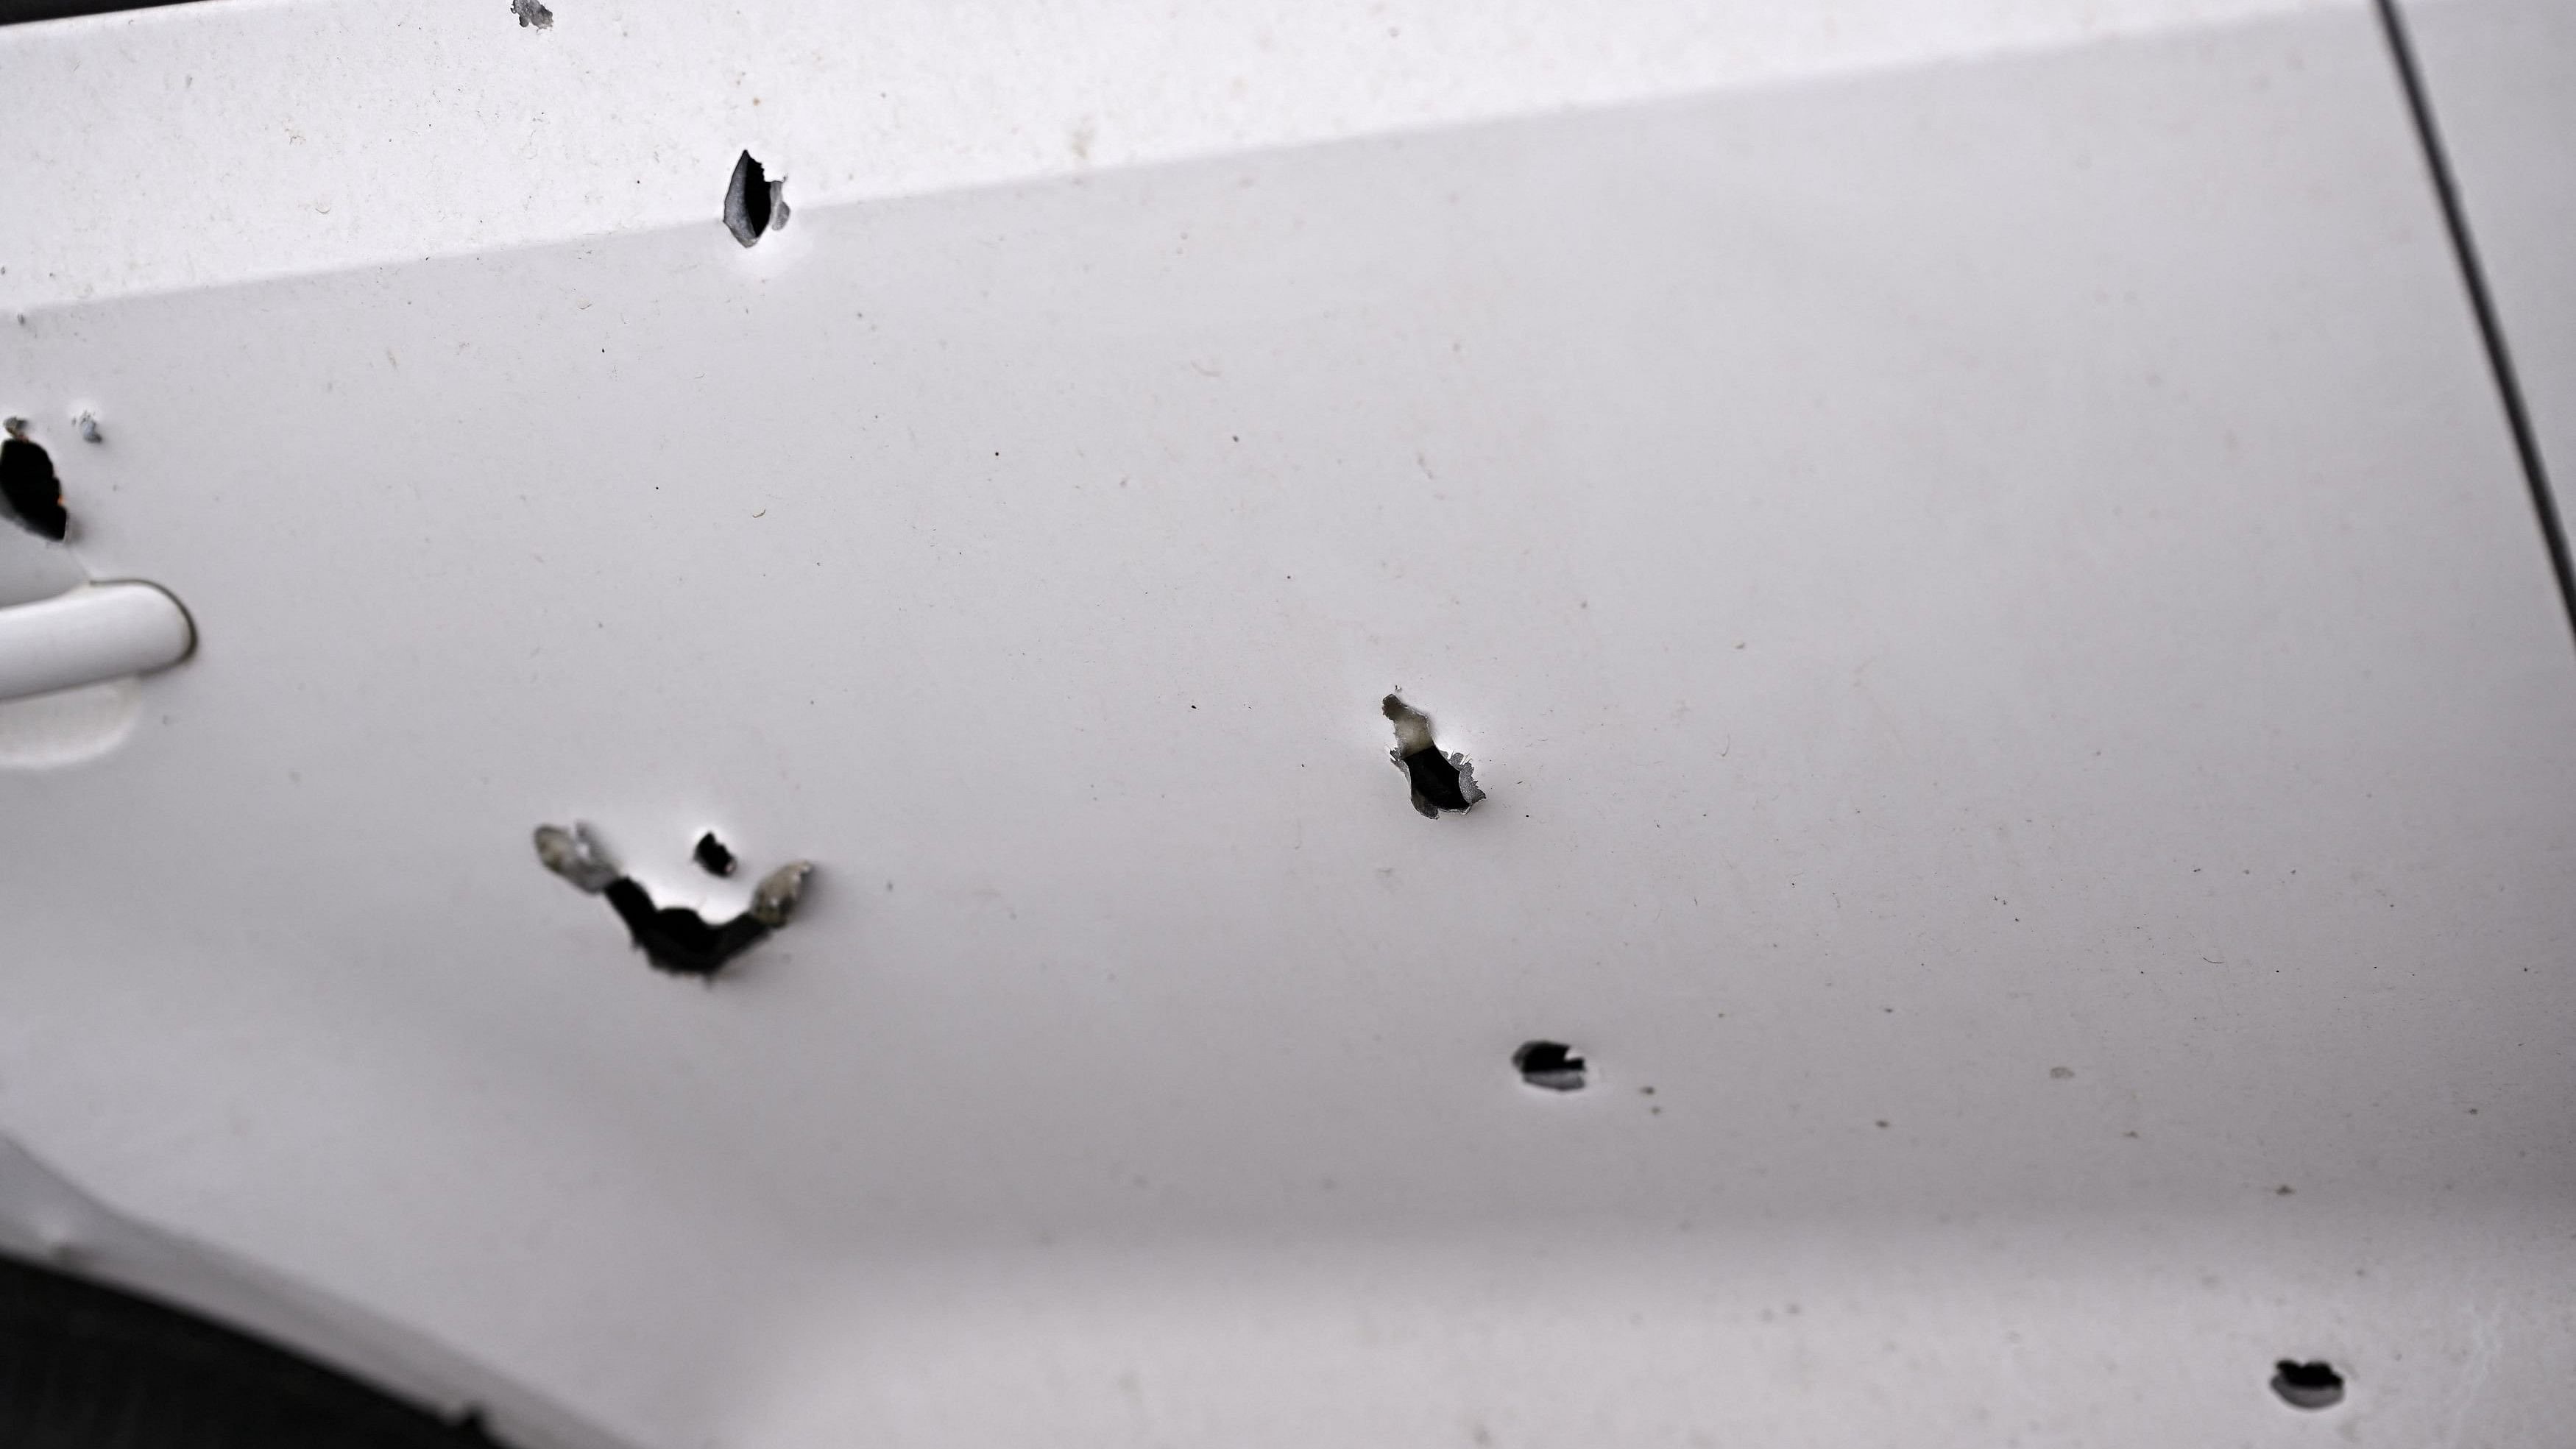 <div class="paragraphs"><p>Representative image showing bullet holes on a car.</p></div>